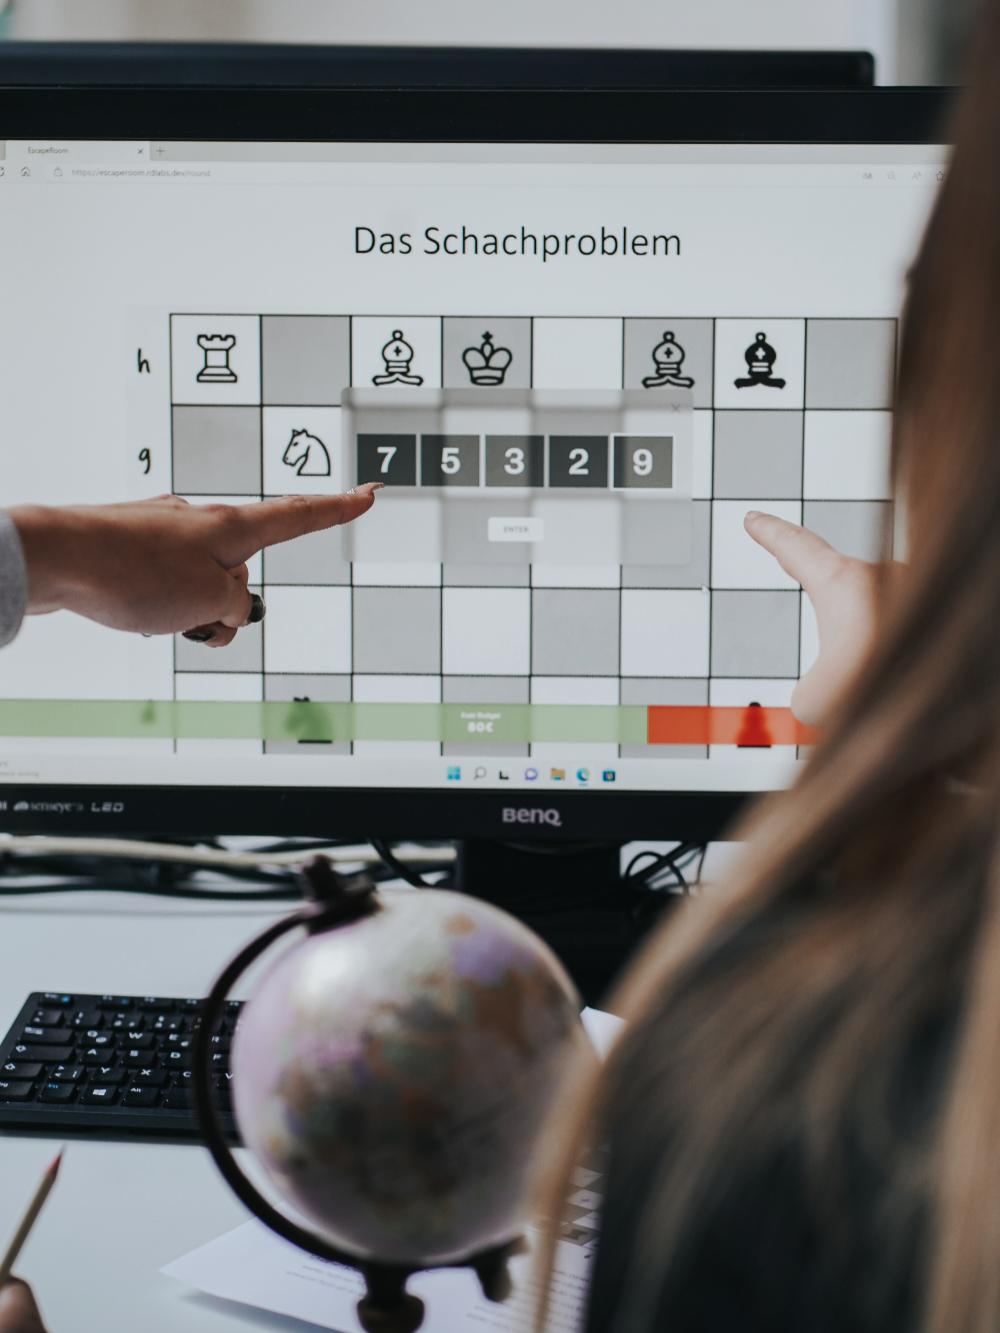 Ein Computer Bildschirm auf welchem ein Spiel zu sehen ist. Eine Hand deutet auf eine Zahlenreihenfolge.